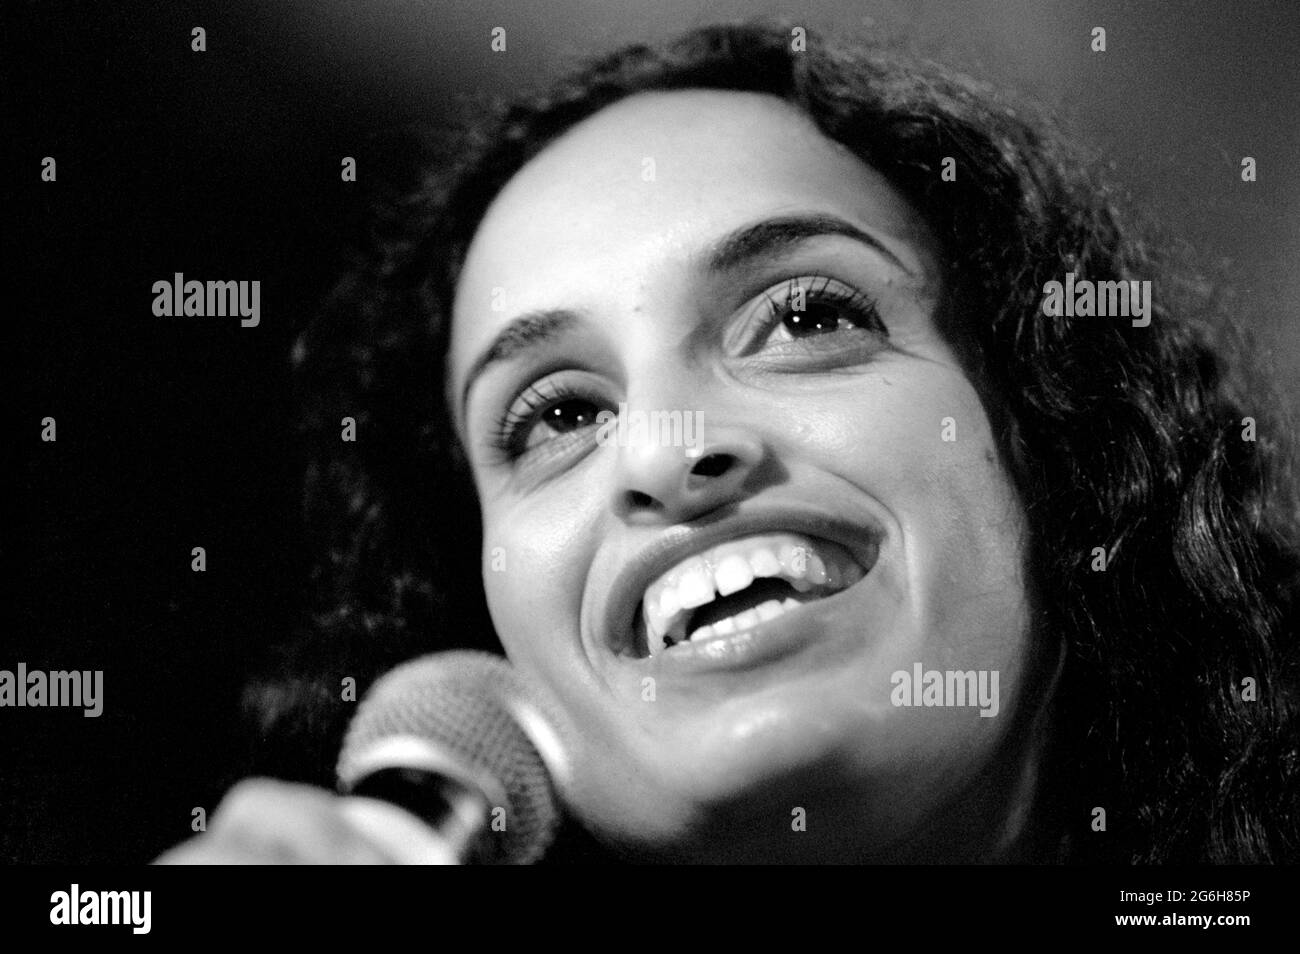 Mailand Italien 1998-02-17: Noa während der Fotosession vor dem Live-Konzert bei den Montecarlo-Nächten auf der Bühne Stockfoto